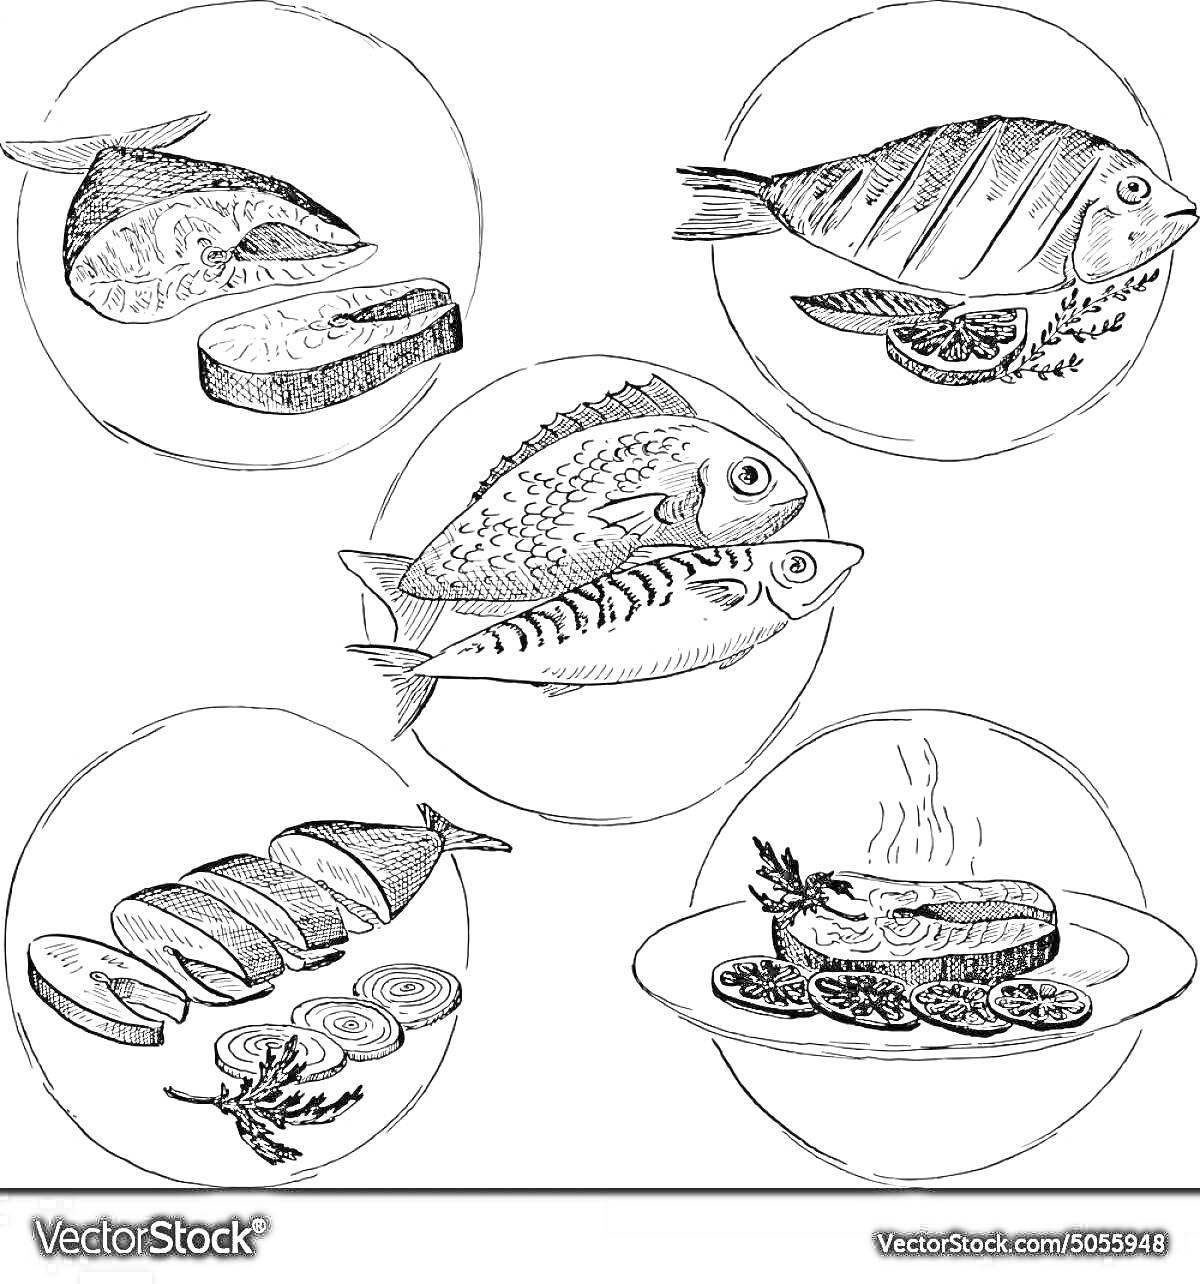 Раскраска Пять изображений рыбных продуктов, включая целую рыбу с гарниром, два вида целых рыбы, нарезанное филе рыбы с лимоном, запеченное рыбное филе с овощами